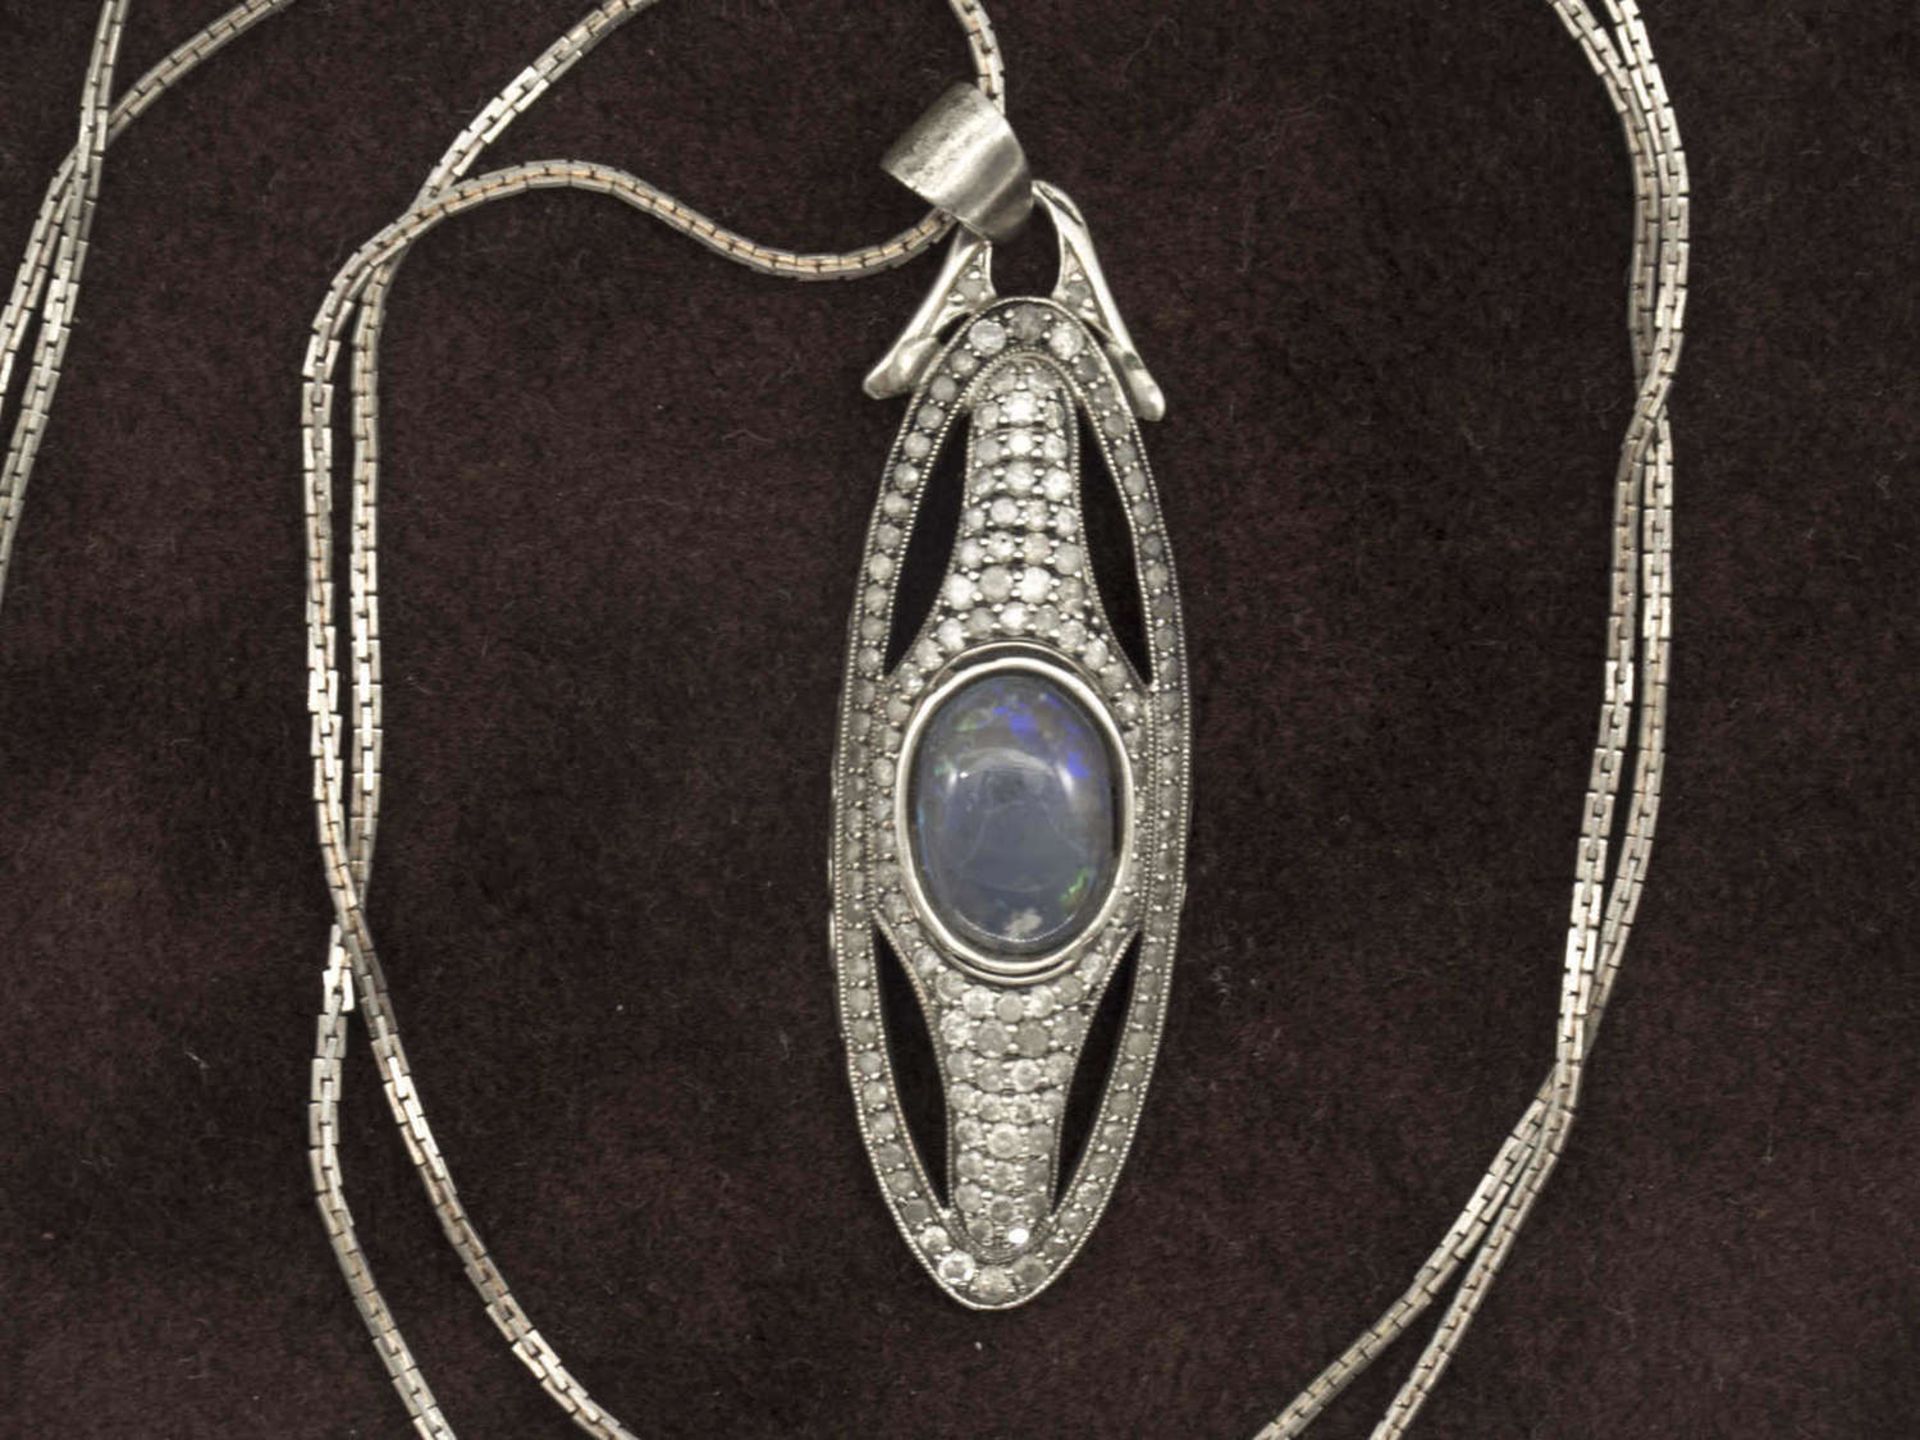 Silberanhänger besetzt mit Opal und zahlreichen Brillianten. Länge ca. 6,8 cm, Breite ca. 2 cm mit